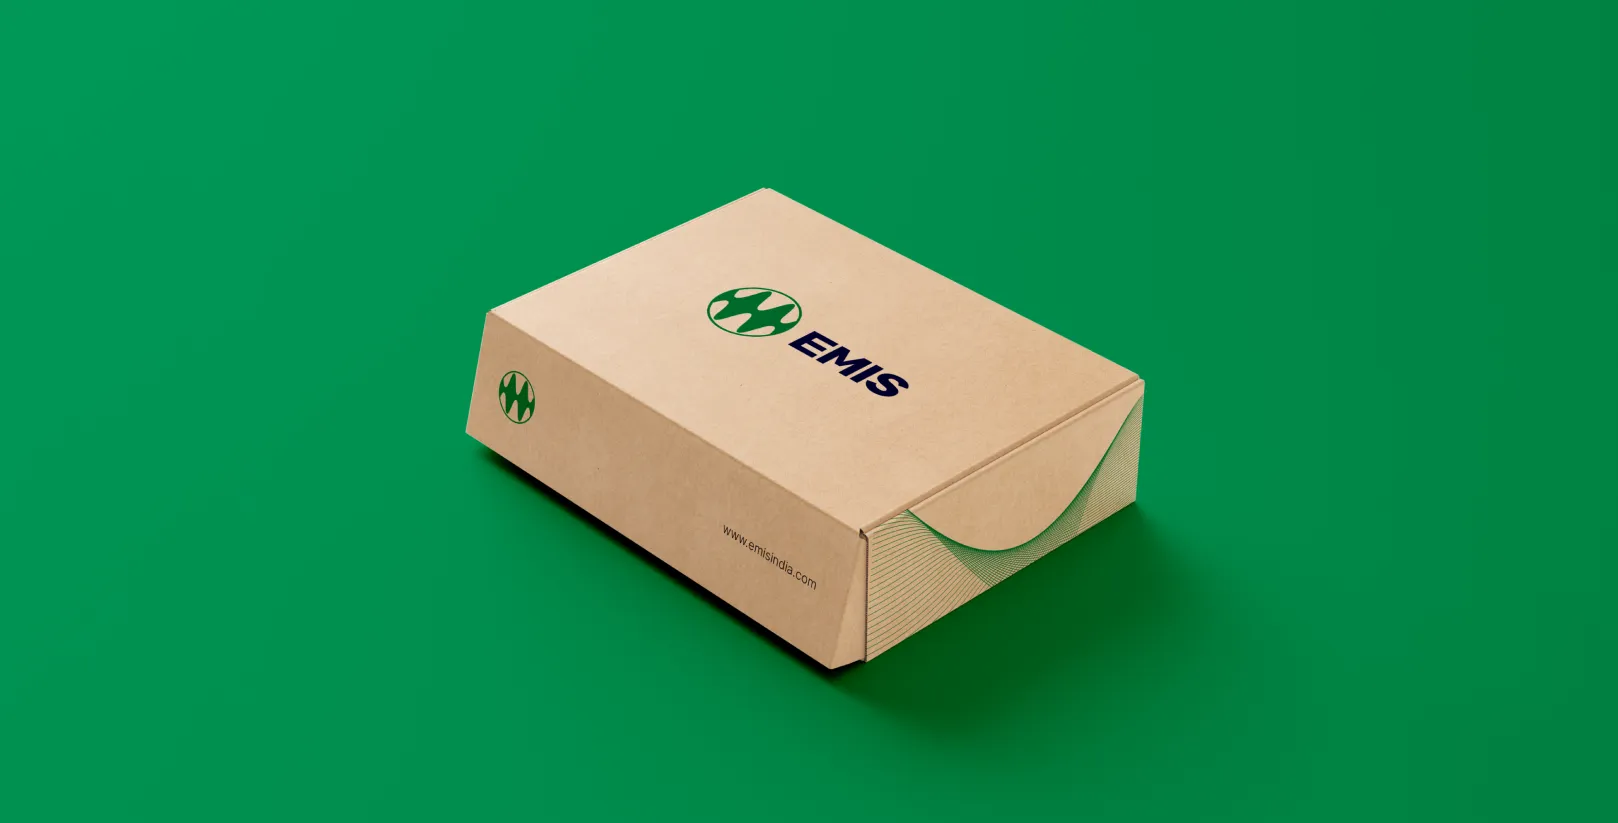 EMIS branding - packaging design